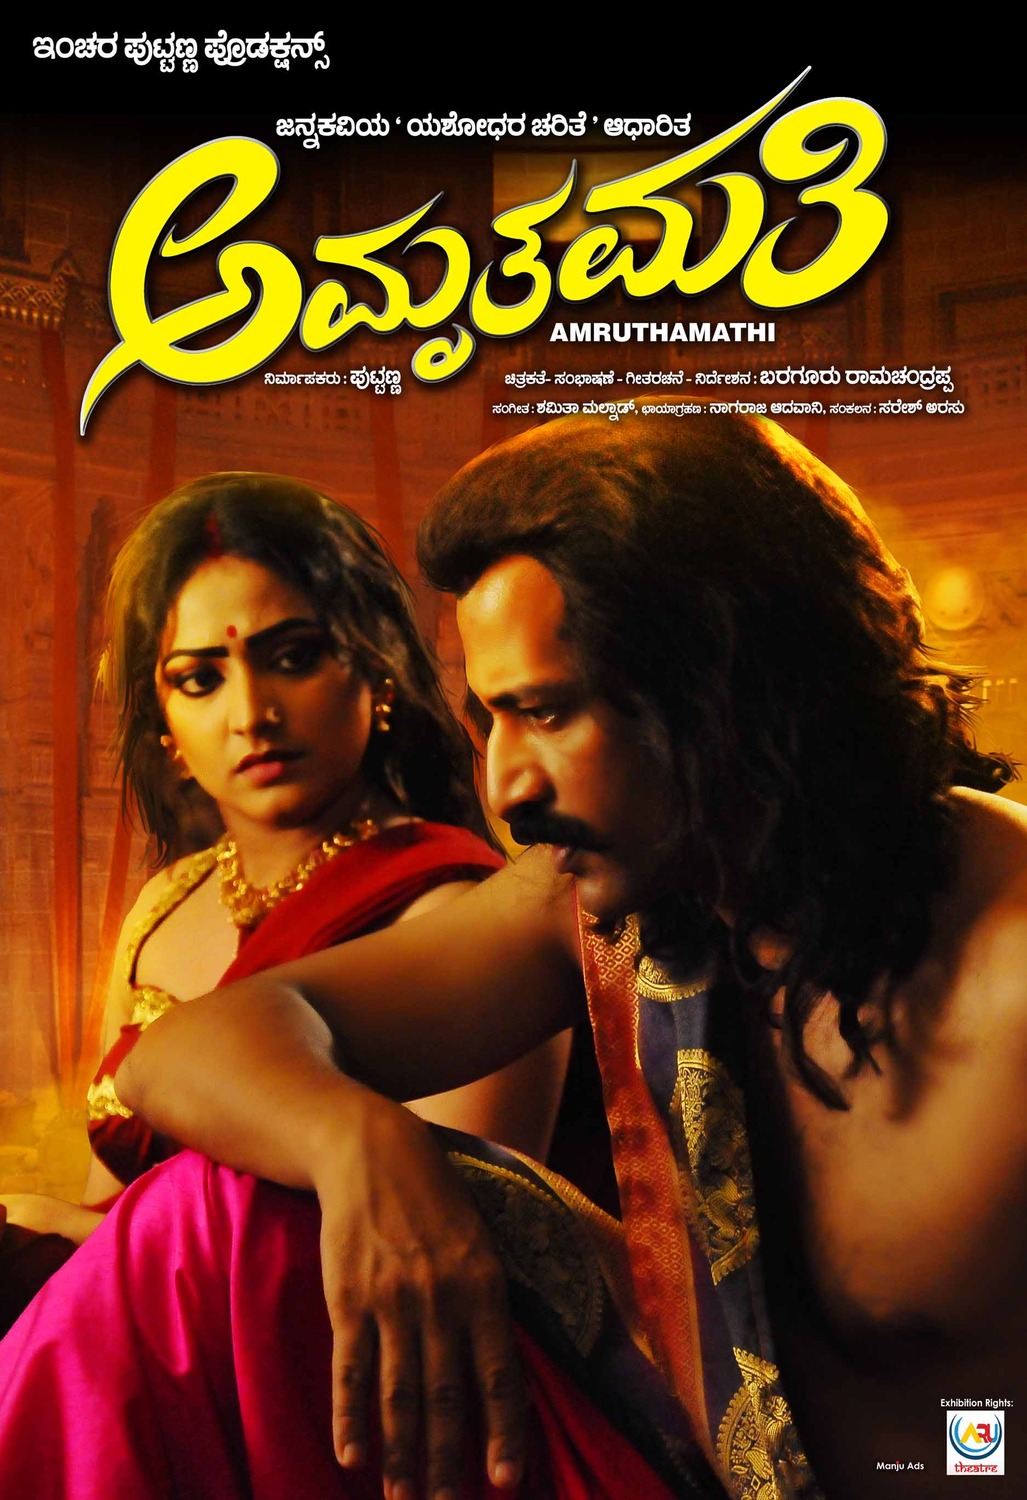 Extra Large Movie Poster Image for Amruthamathi (#7 of 10)